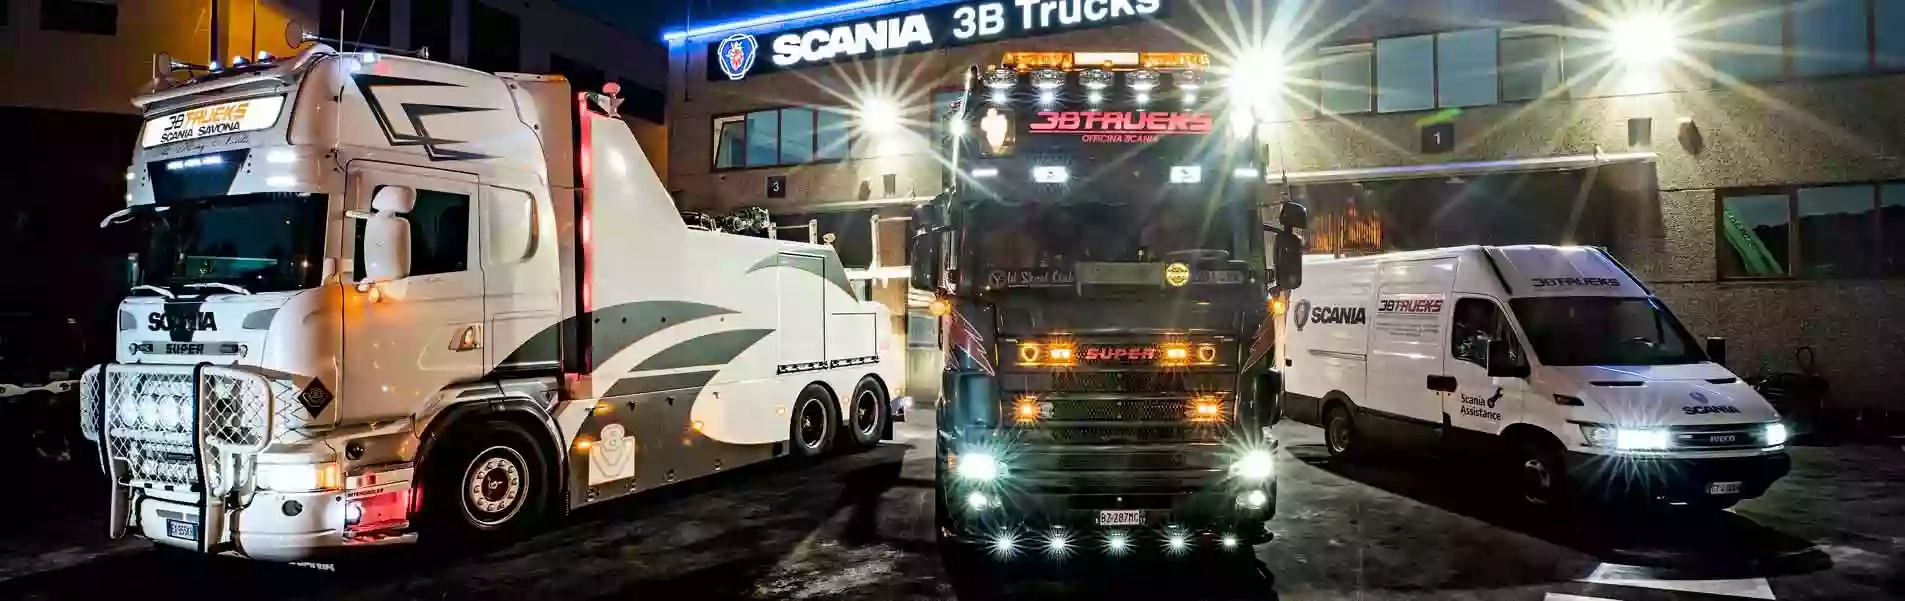 3B Trucks - Centro Revisioni Savona